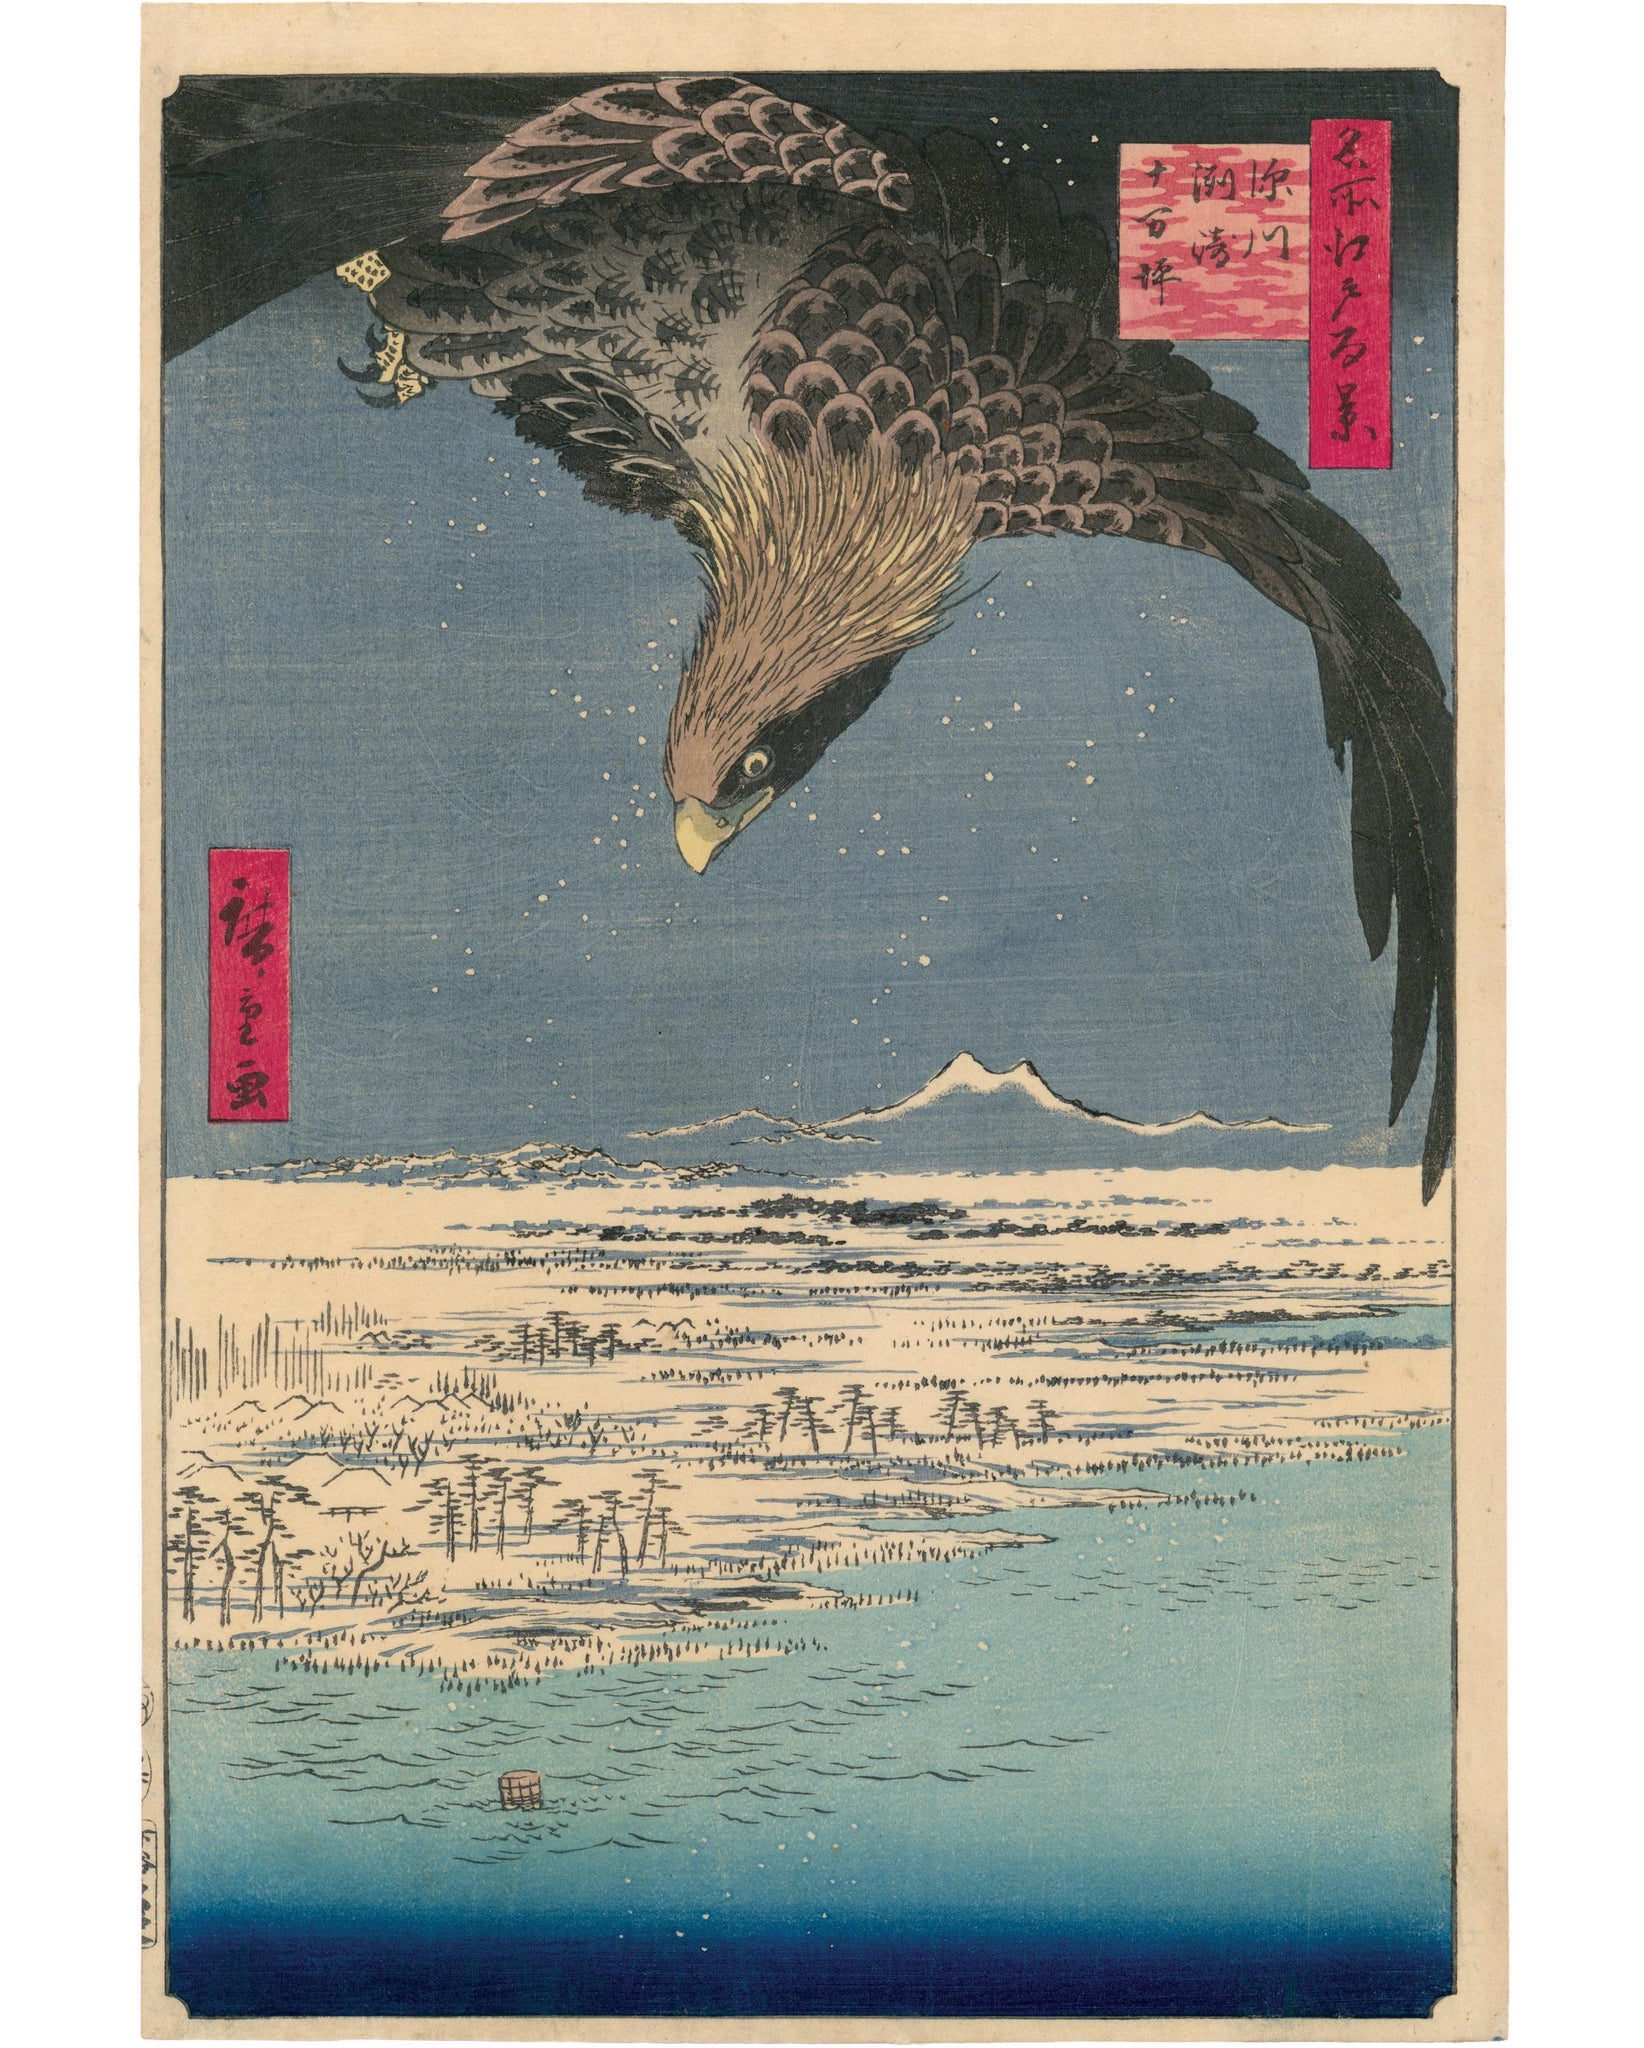 Hiroshige: “Fukagawa Susaki and Jûmantsubo” (Fukagawa Susaki 